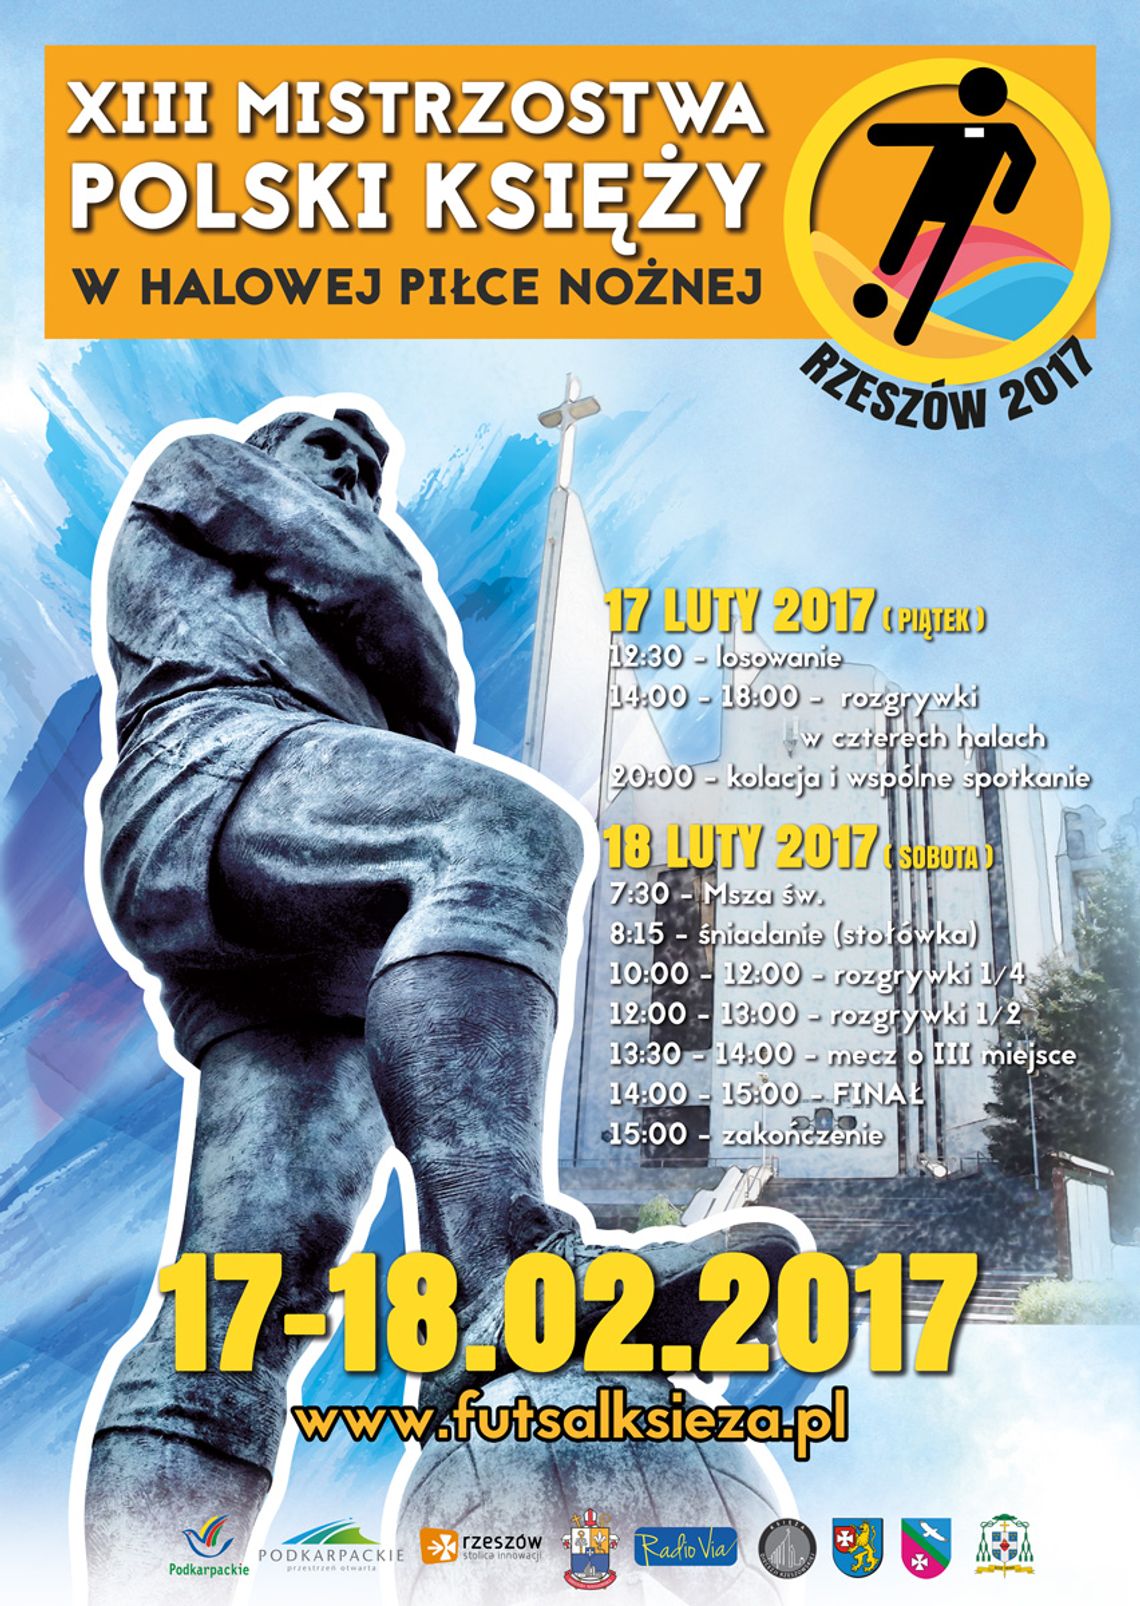 XIII Mistrzostwa Polski Księży w Halowej Piłce Nożnej w Rzeszowie 2017